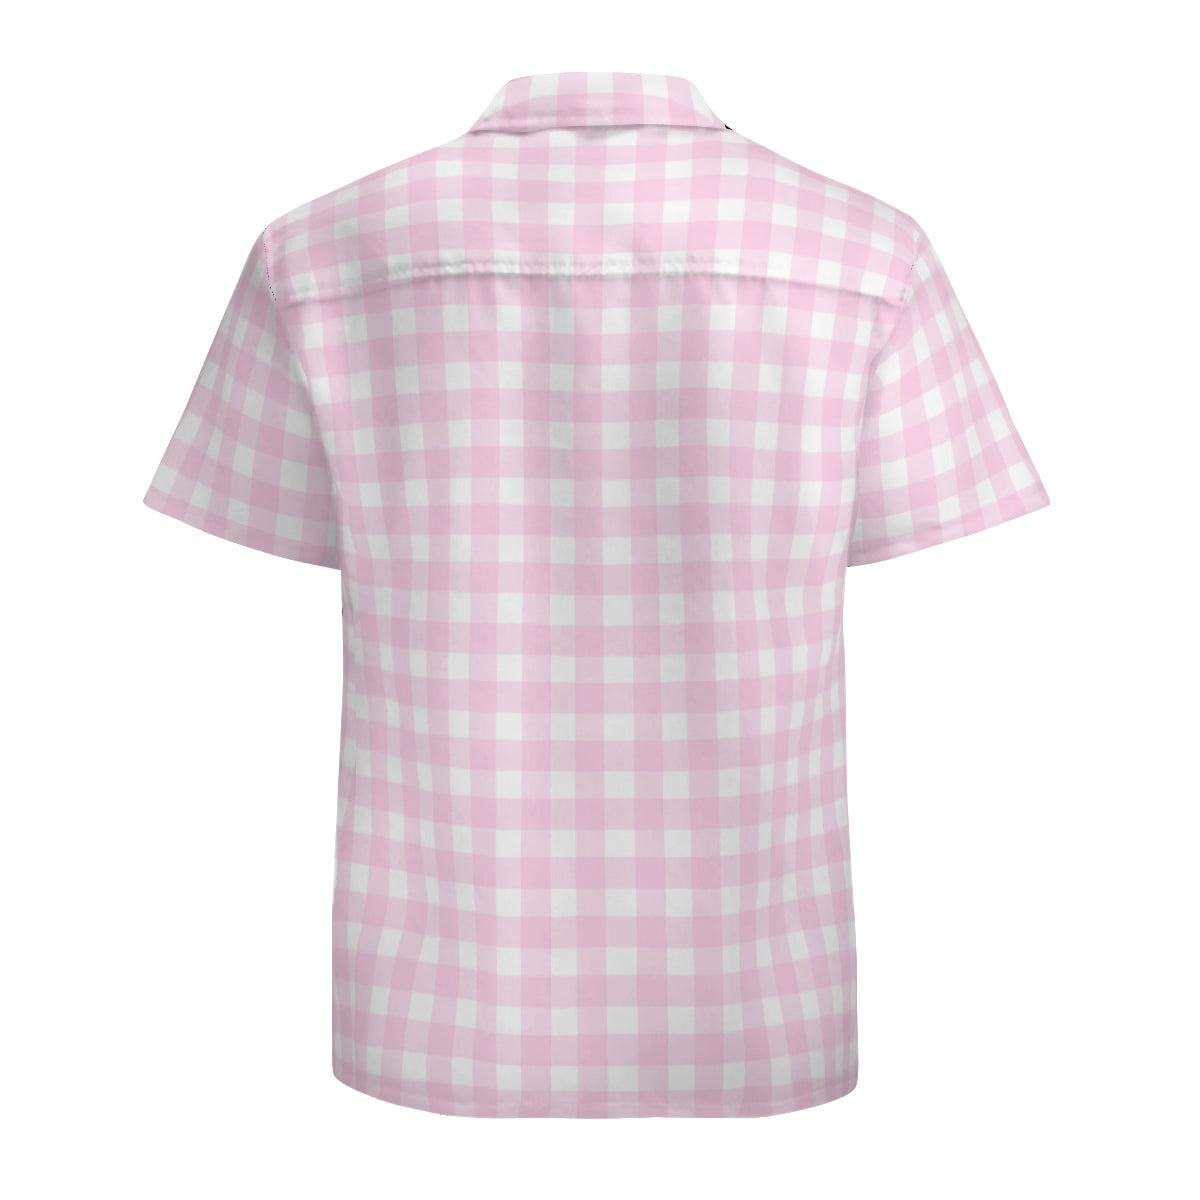 Pink Gingham Shirt Men, Retro Shirt Men, Pink Shirt Men, Vintage Style Shirt Men, Pink Top Men, Men's Gingham Shirt